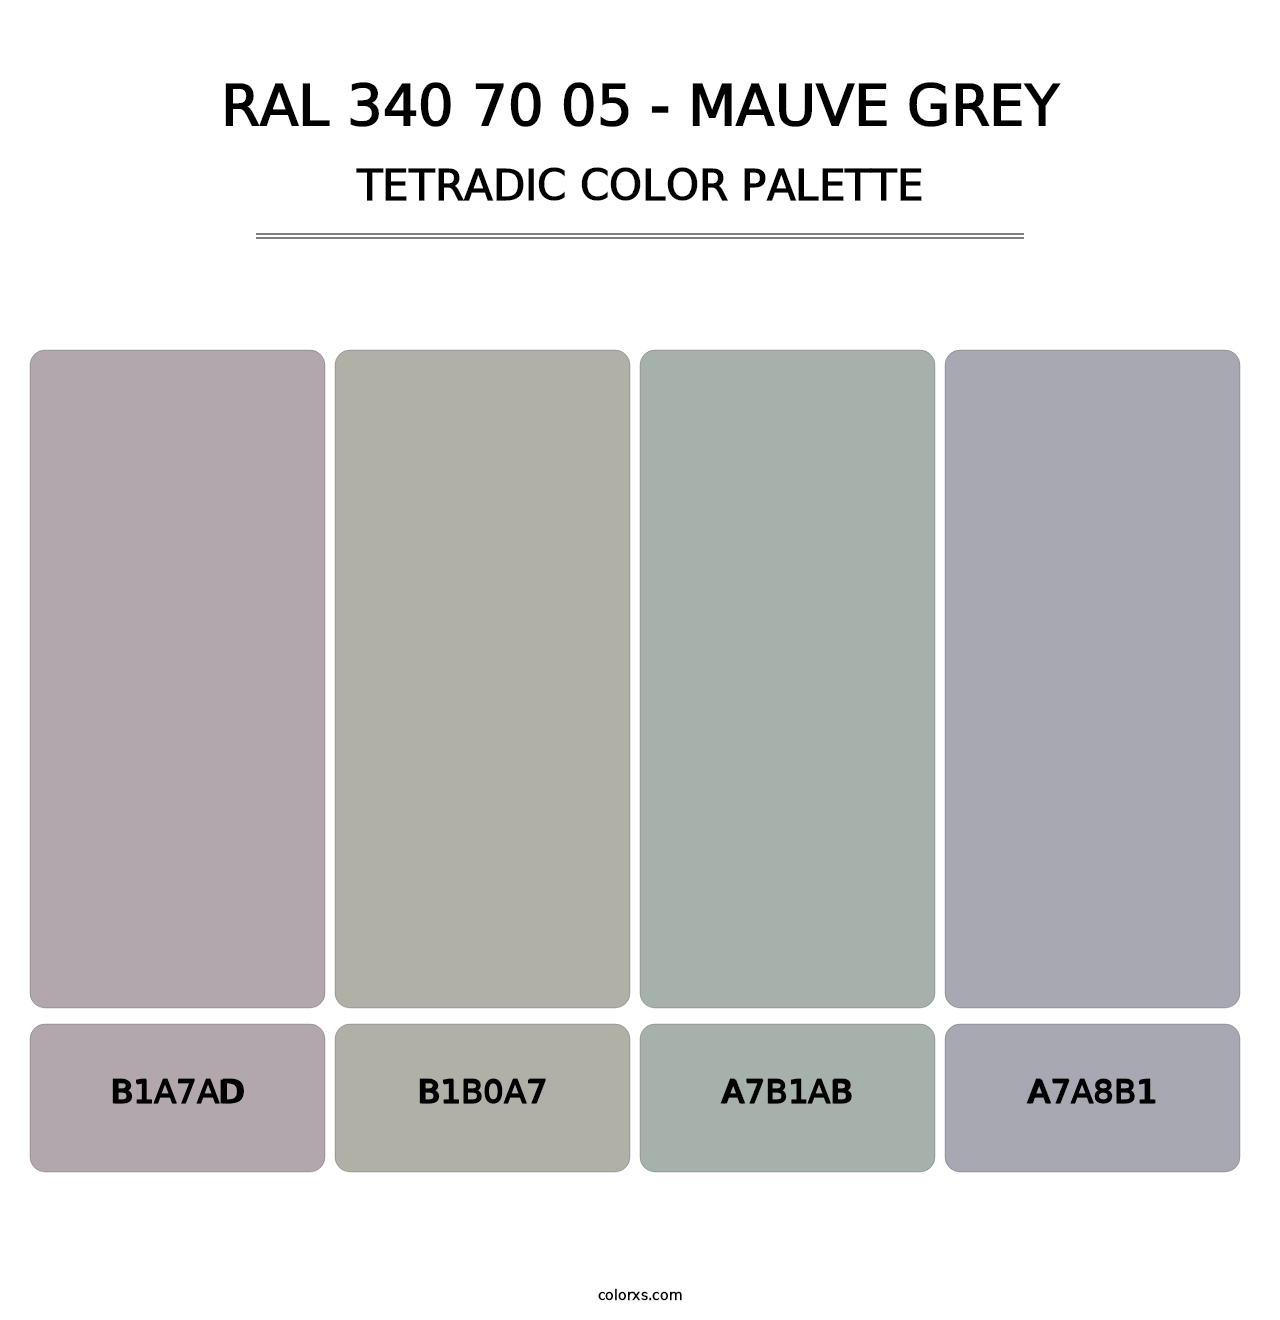 RAL 340 70 05 - Mauve Grey - Tetradic Color Palette